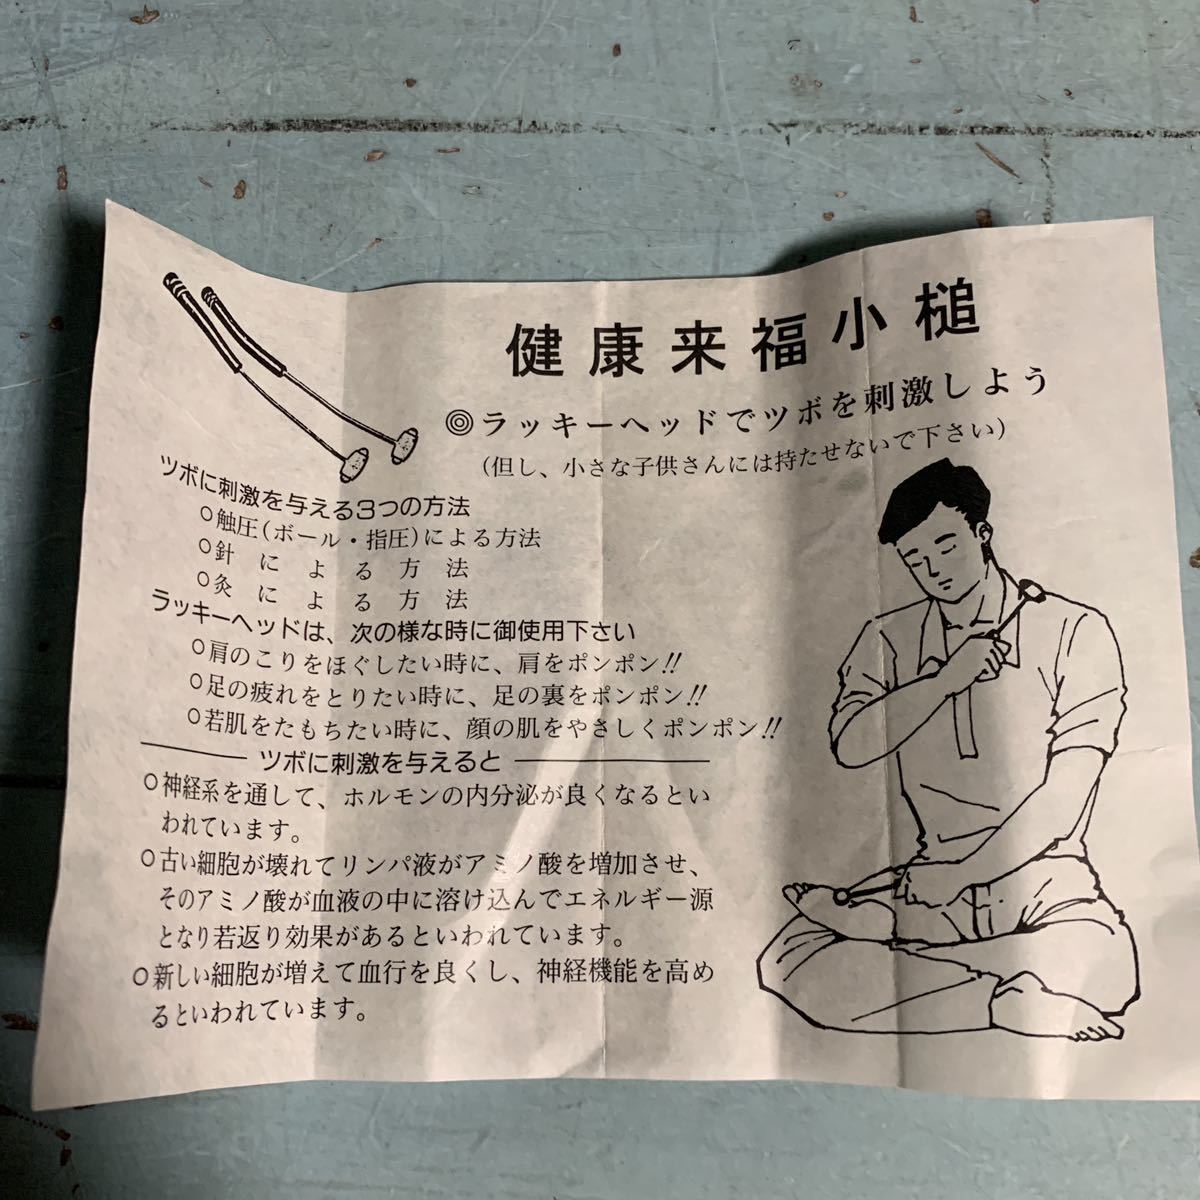 tsubo. ultra health . luck small hammer Showa Retro massage goods massage stick .. pushed ... thing (8195)